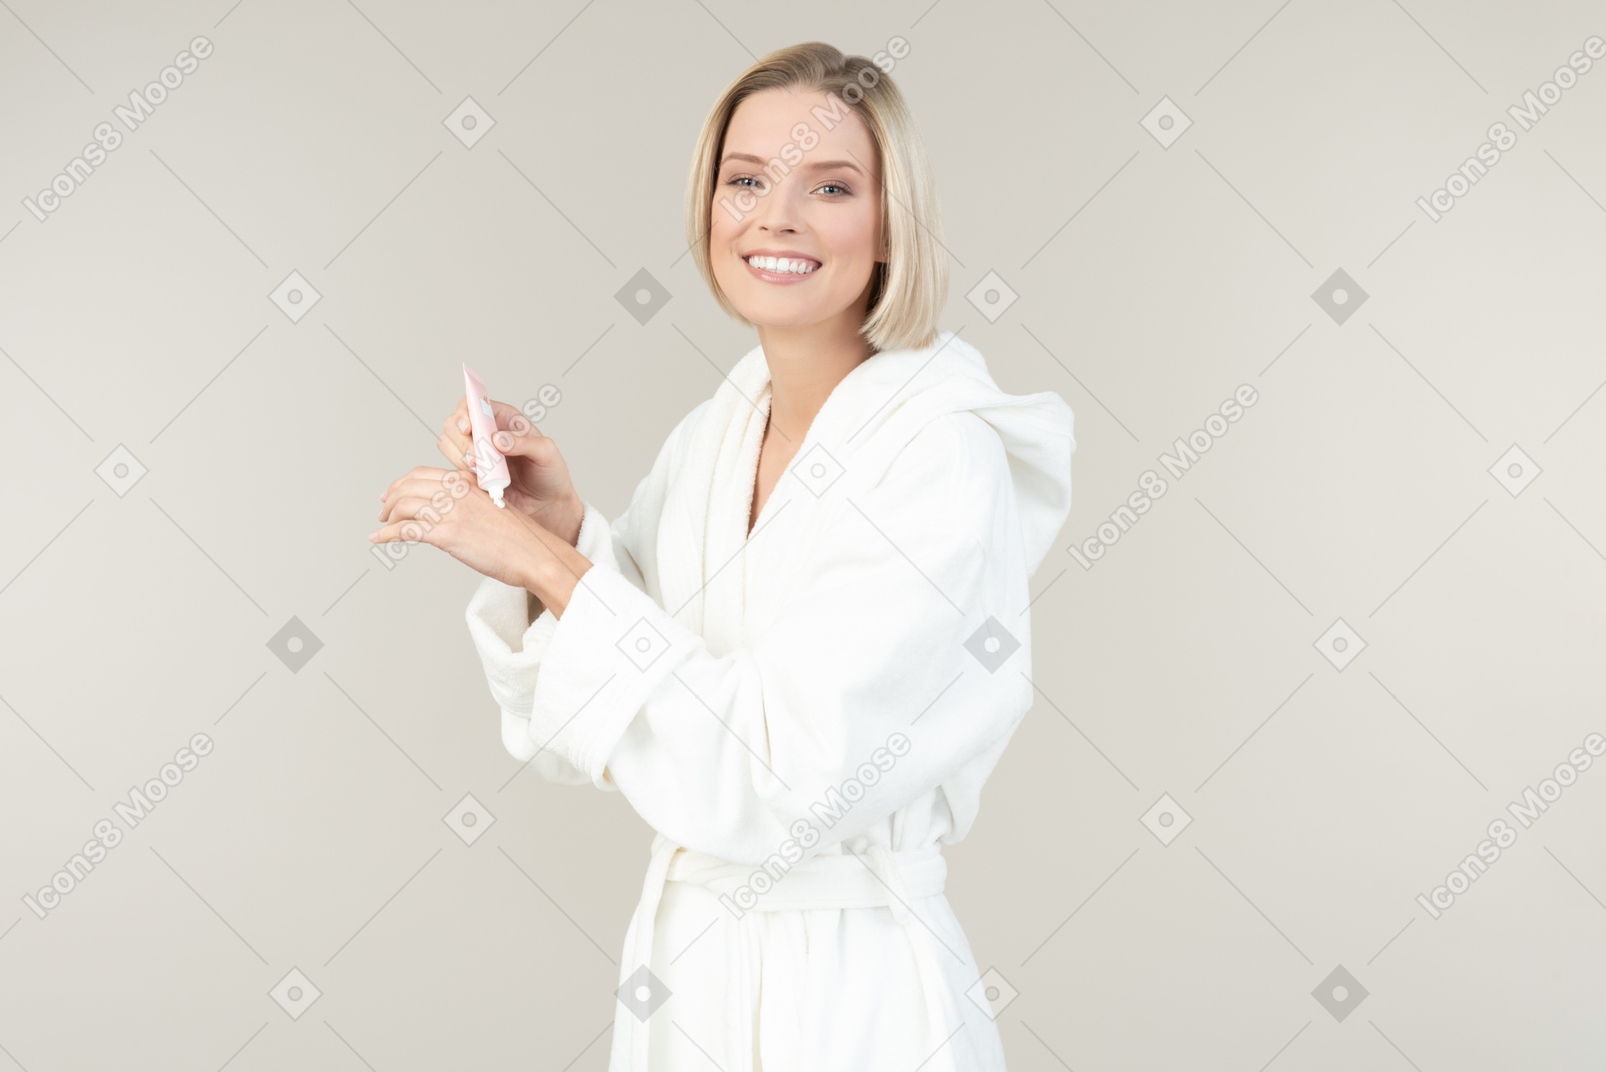 Jeune femme blonde dans un peignoir blanc posant avec toutes sortes d'articles de toilette